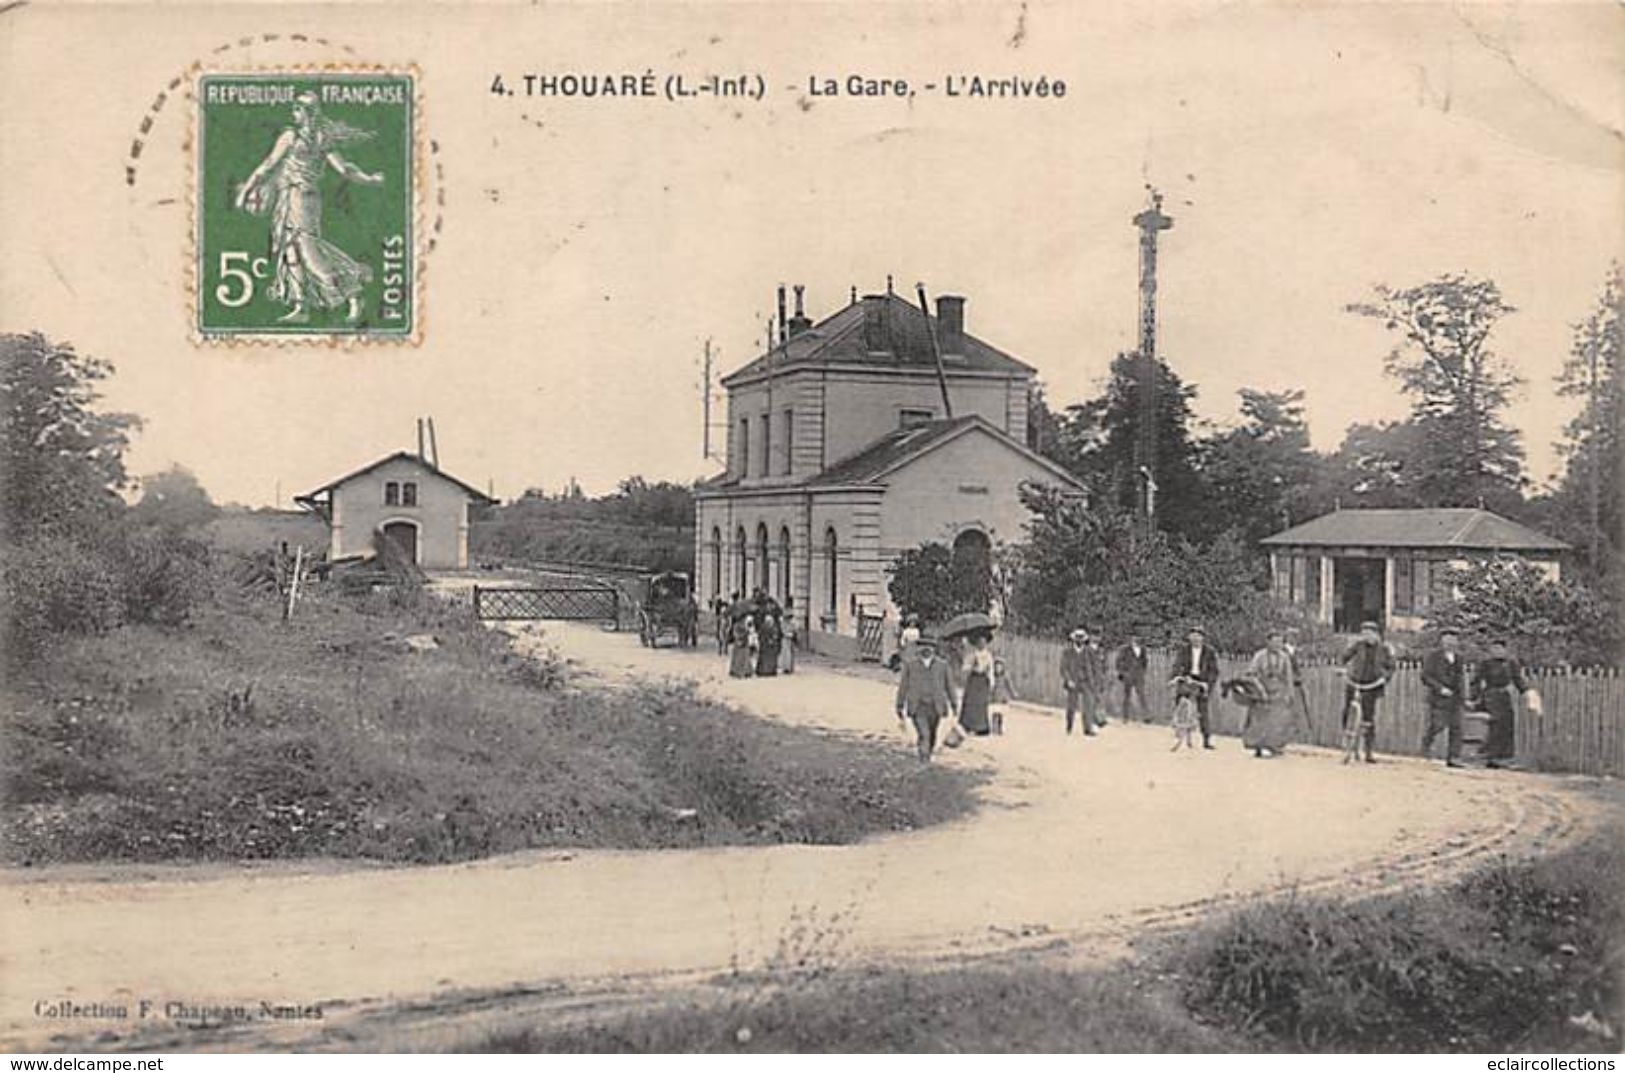 36 cartes de Loire Atlantique  vendues en lot : Villages et Ville dont très bonnes    (voir scan)